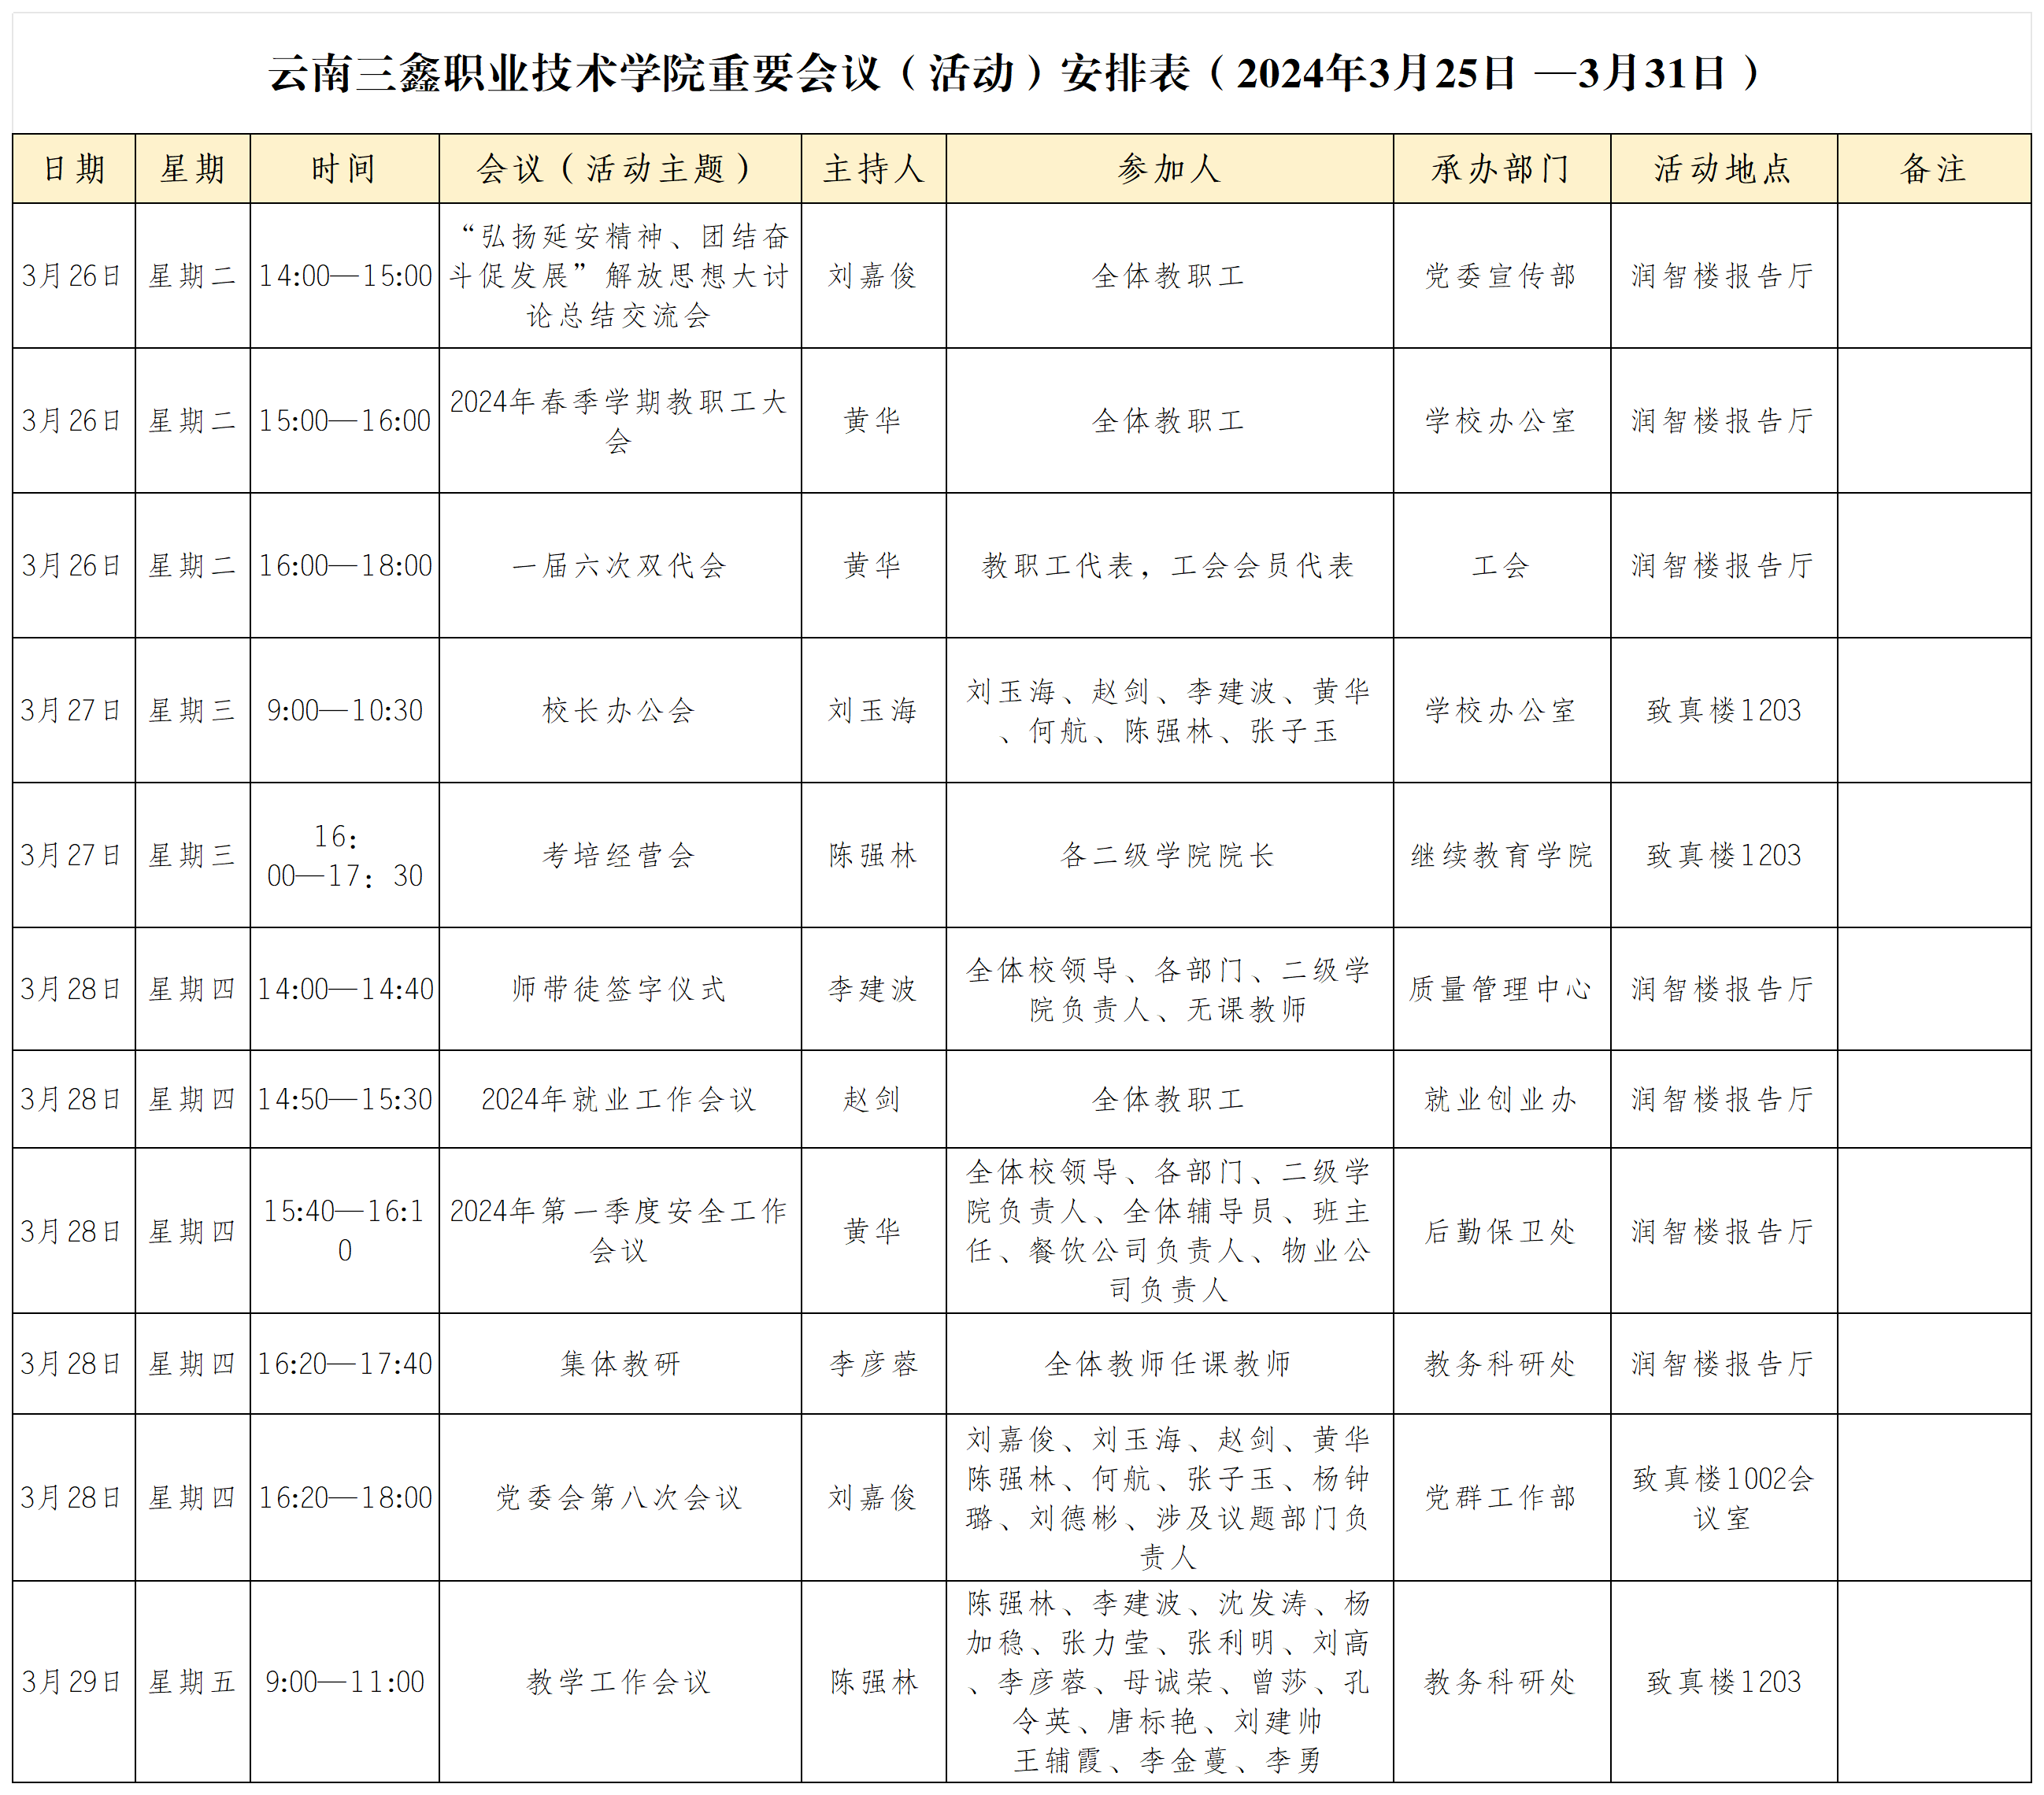 云南三鑫职业技术学院重要会议（活动）安排表（2024年3月25日 —3月31日）